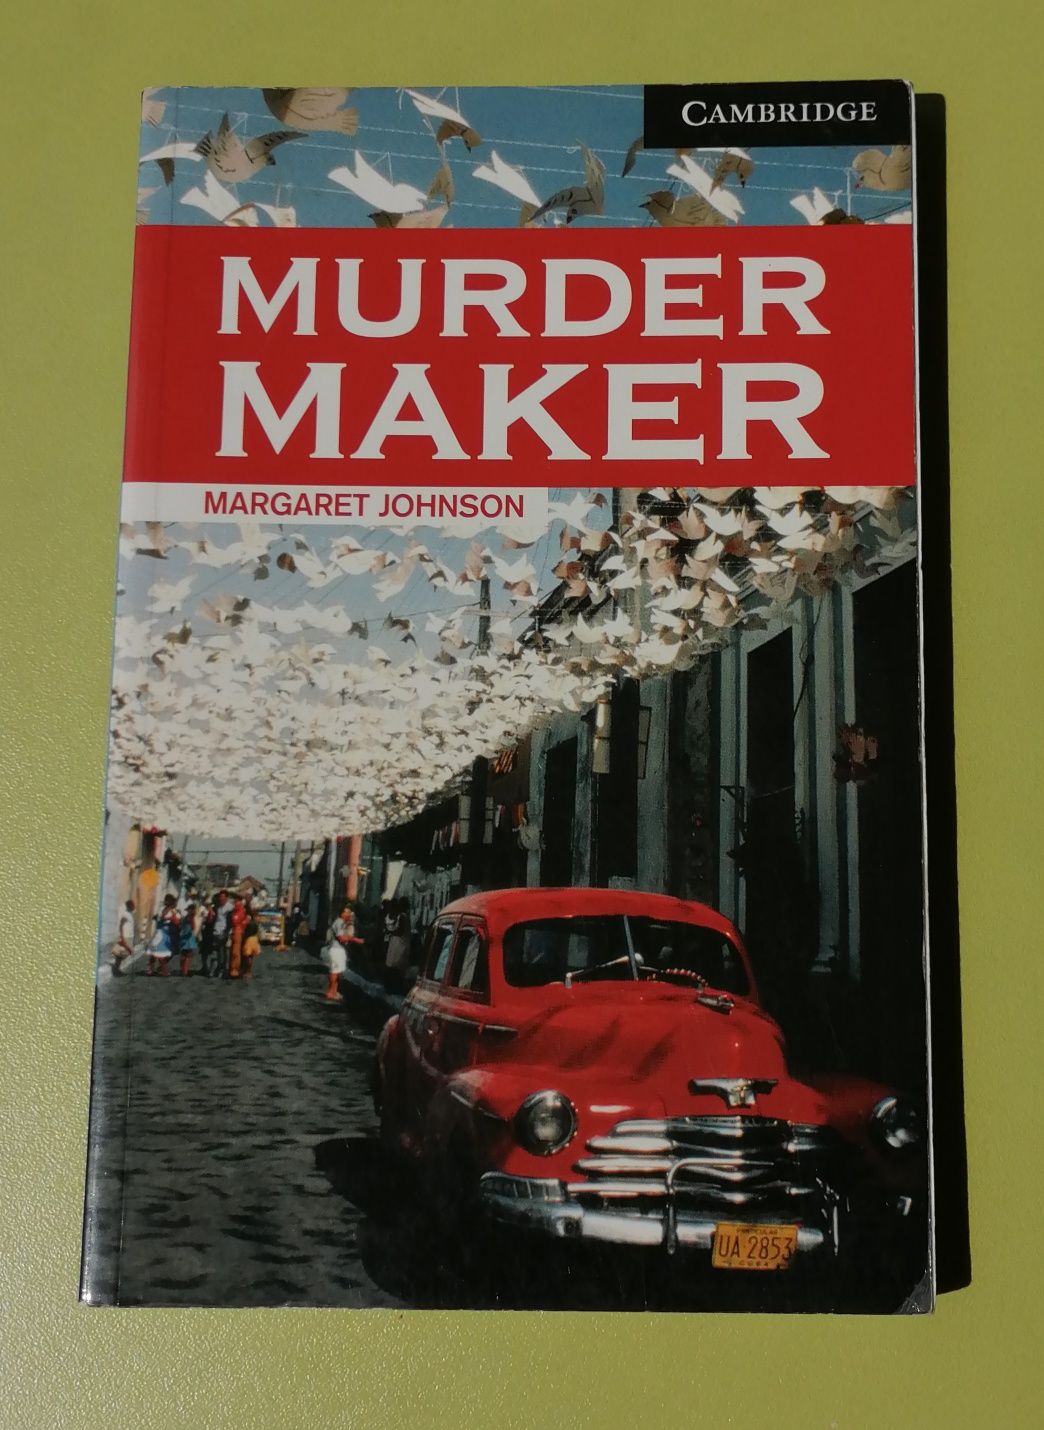 Murder Maker (Margaret Johnson) Cambridge, без CD, Level 6 Advanced, C